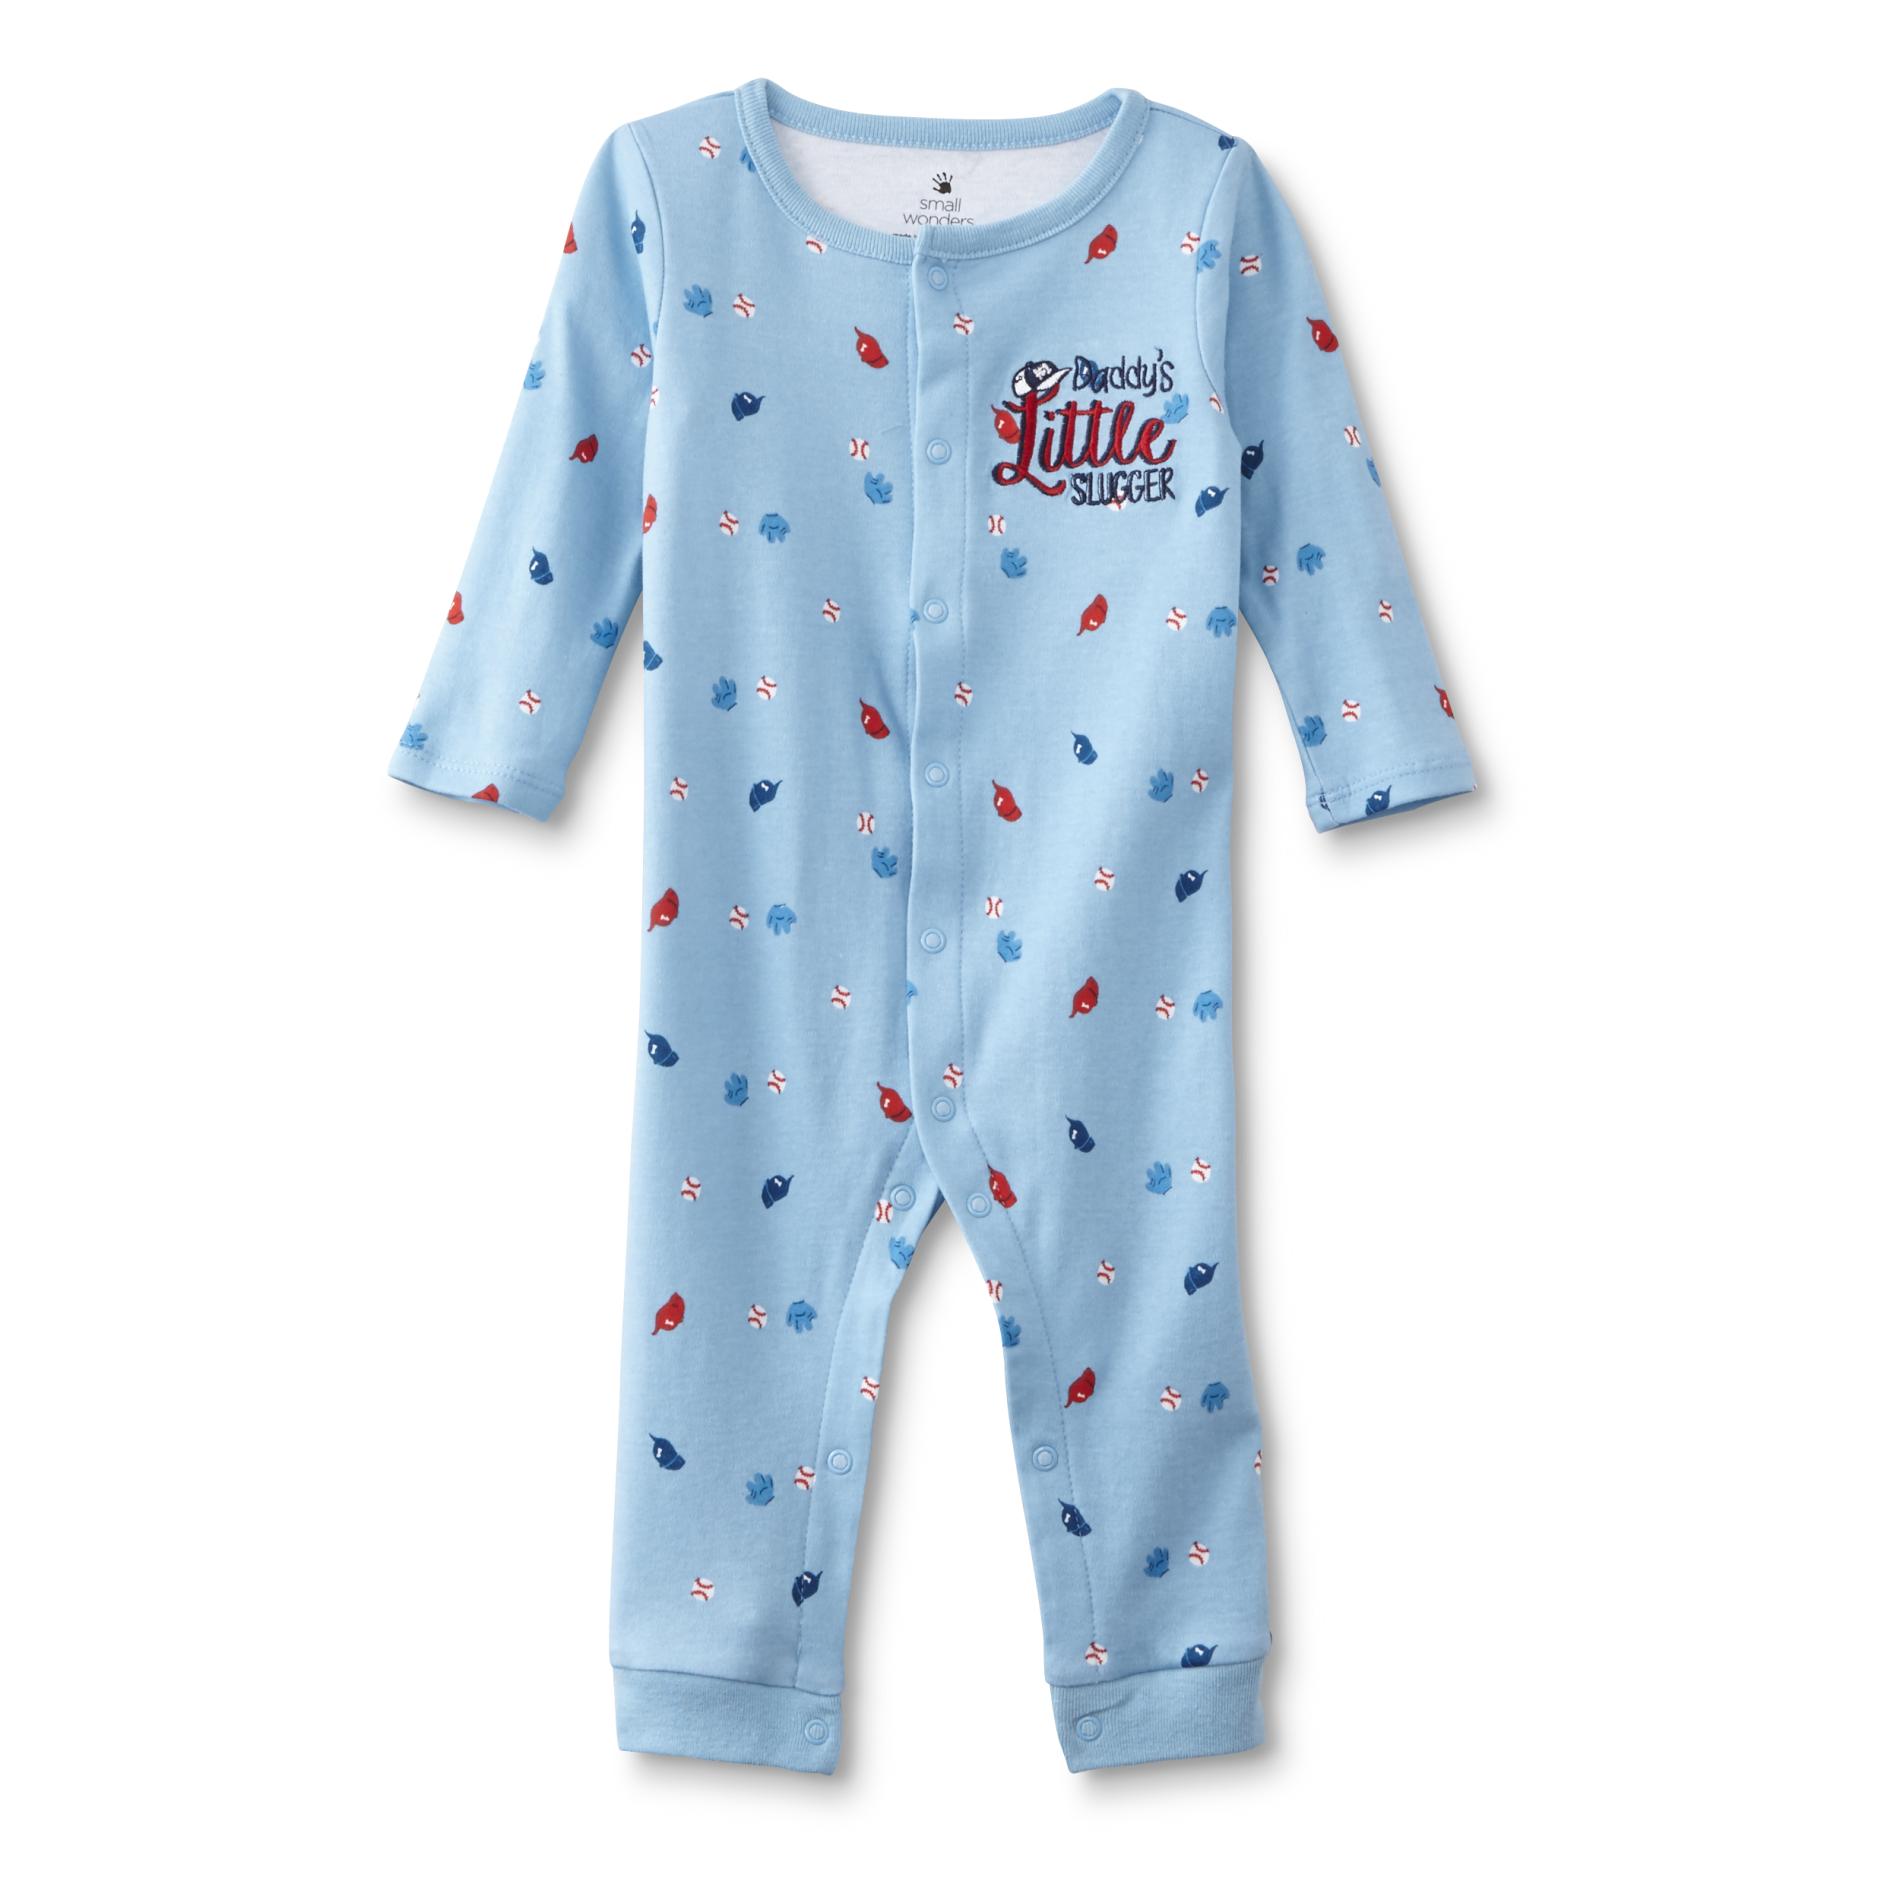 Small Wonders Newborn Boys' Sleep & Play Pajamas - Baseball